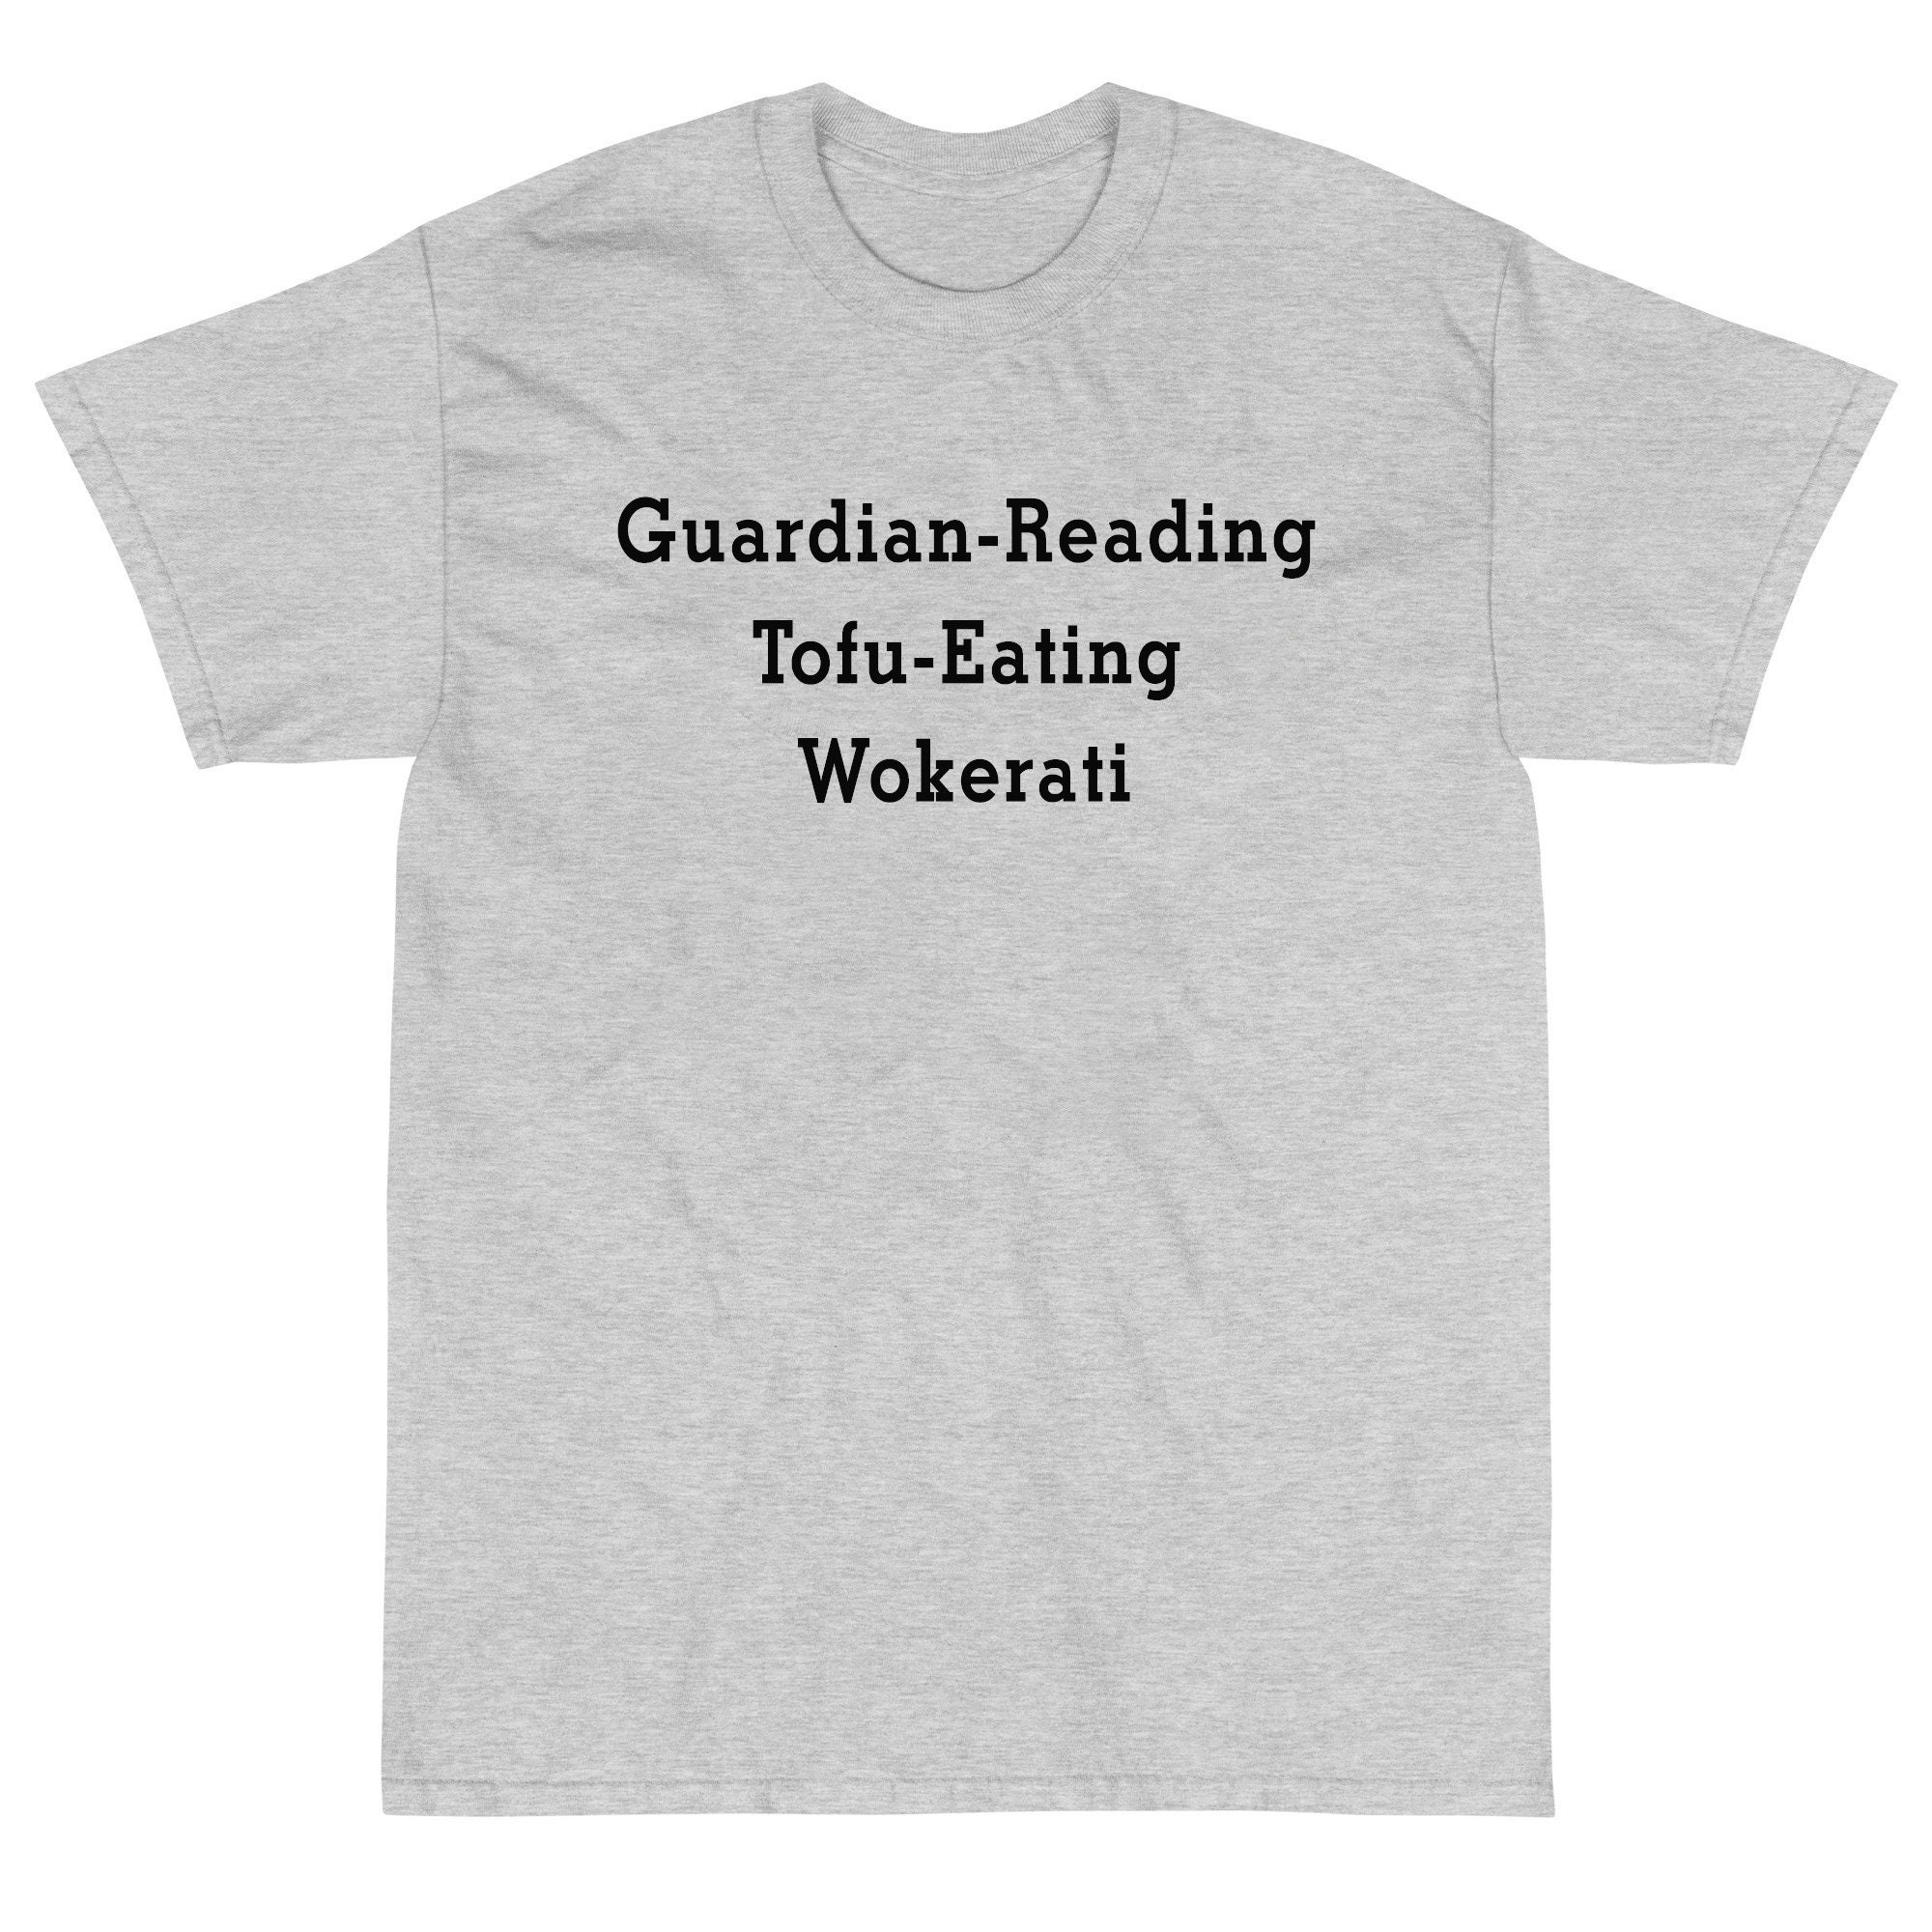 Discover Guardian-Reading Tofu-Eating Wokerati T-Shirt, Proud Member Of The Tofu Eating Wokerati T-Shirts